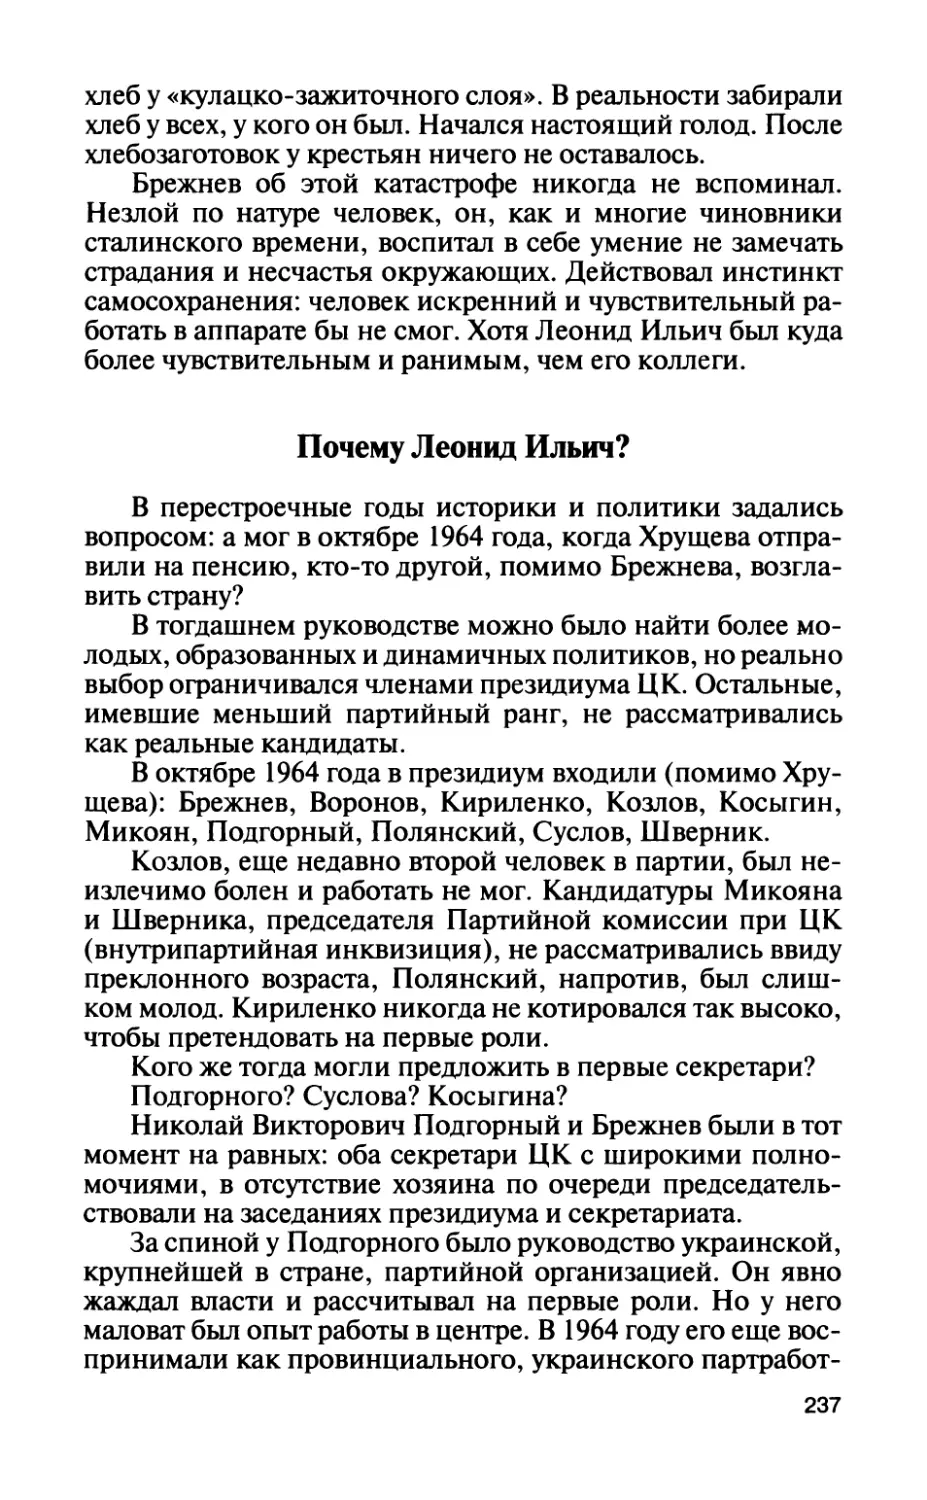 Почему Леонид Ильич